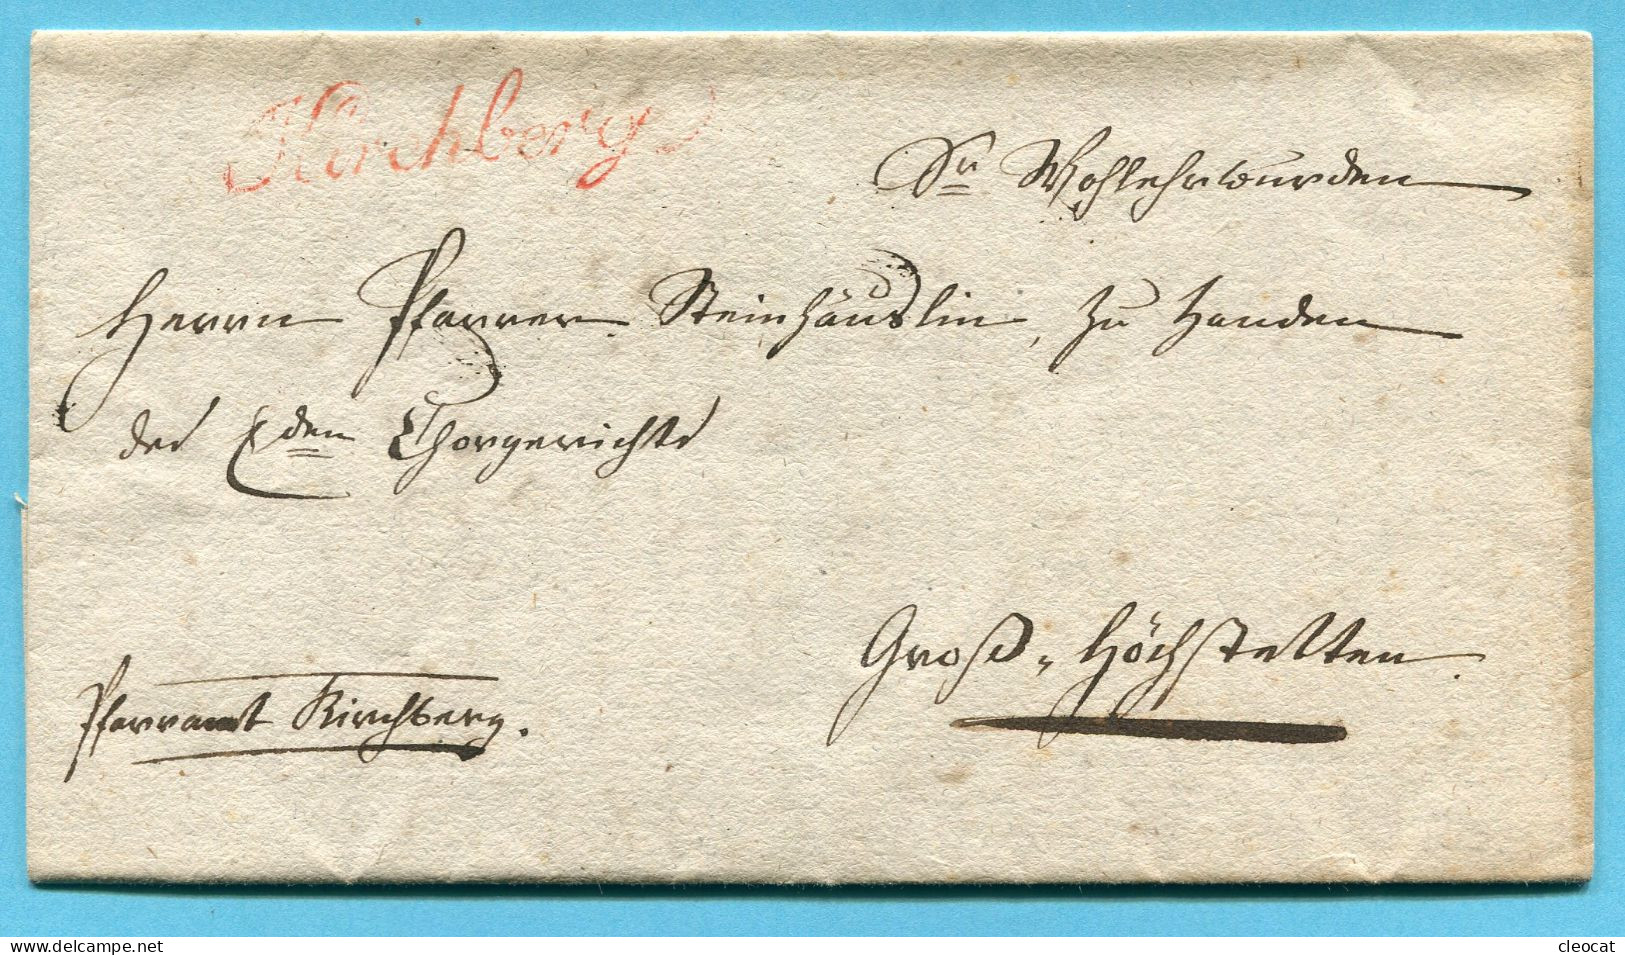 Faltbrief Von Kirchberg Nach Gross-Höchstetten 1830 - ...-1845 Voorlopers